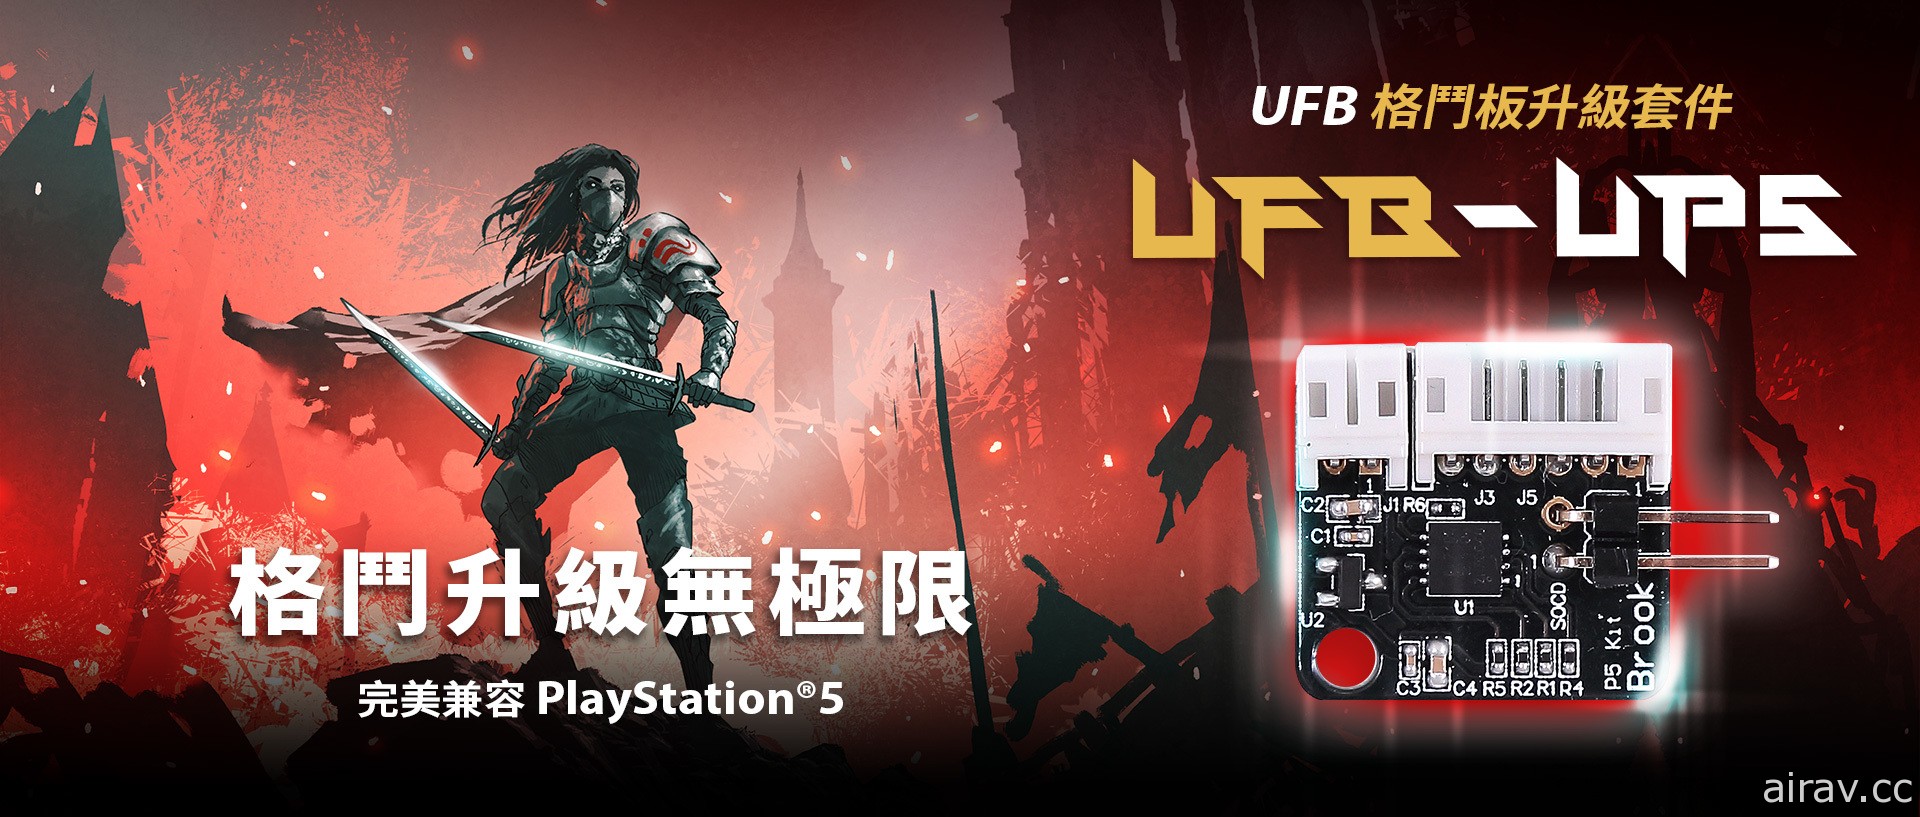 支援 PS5 游戏的格斗摇杆机板升级套件“UFB-UP5”登场